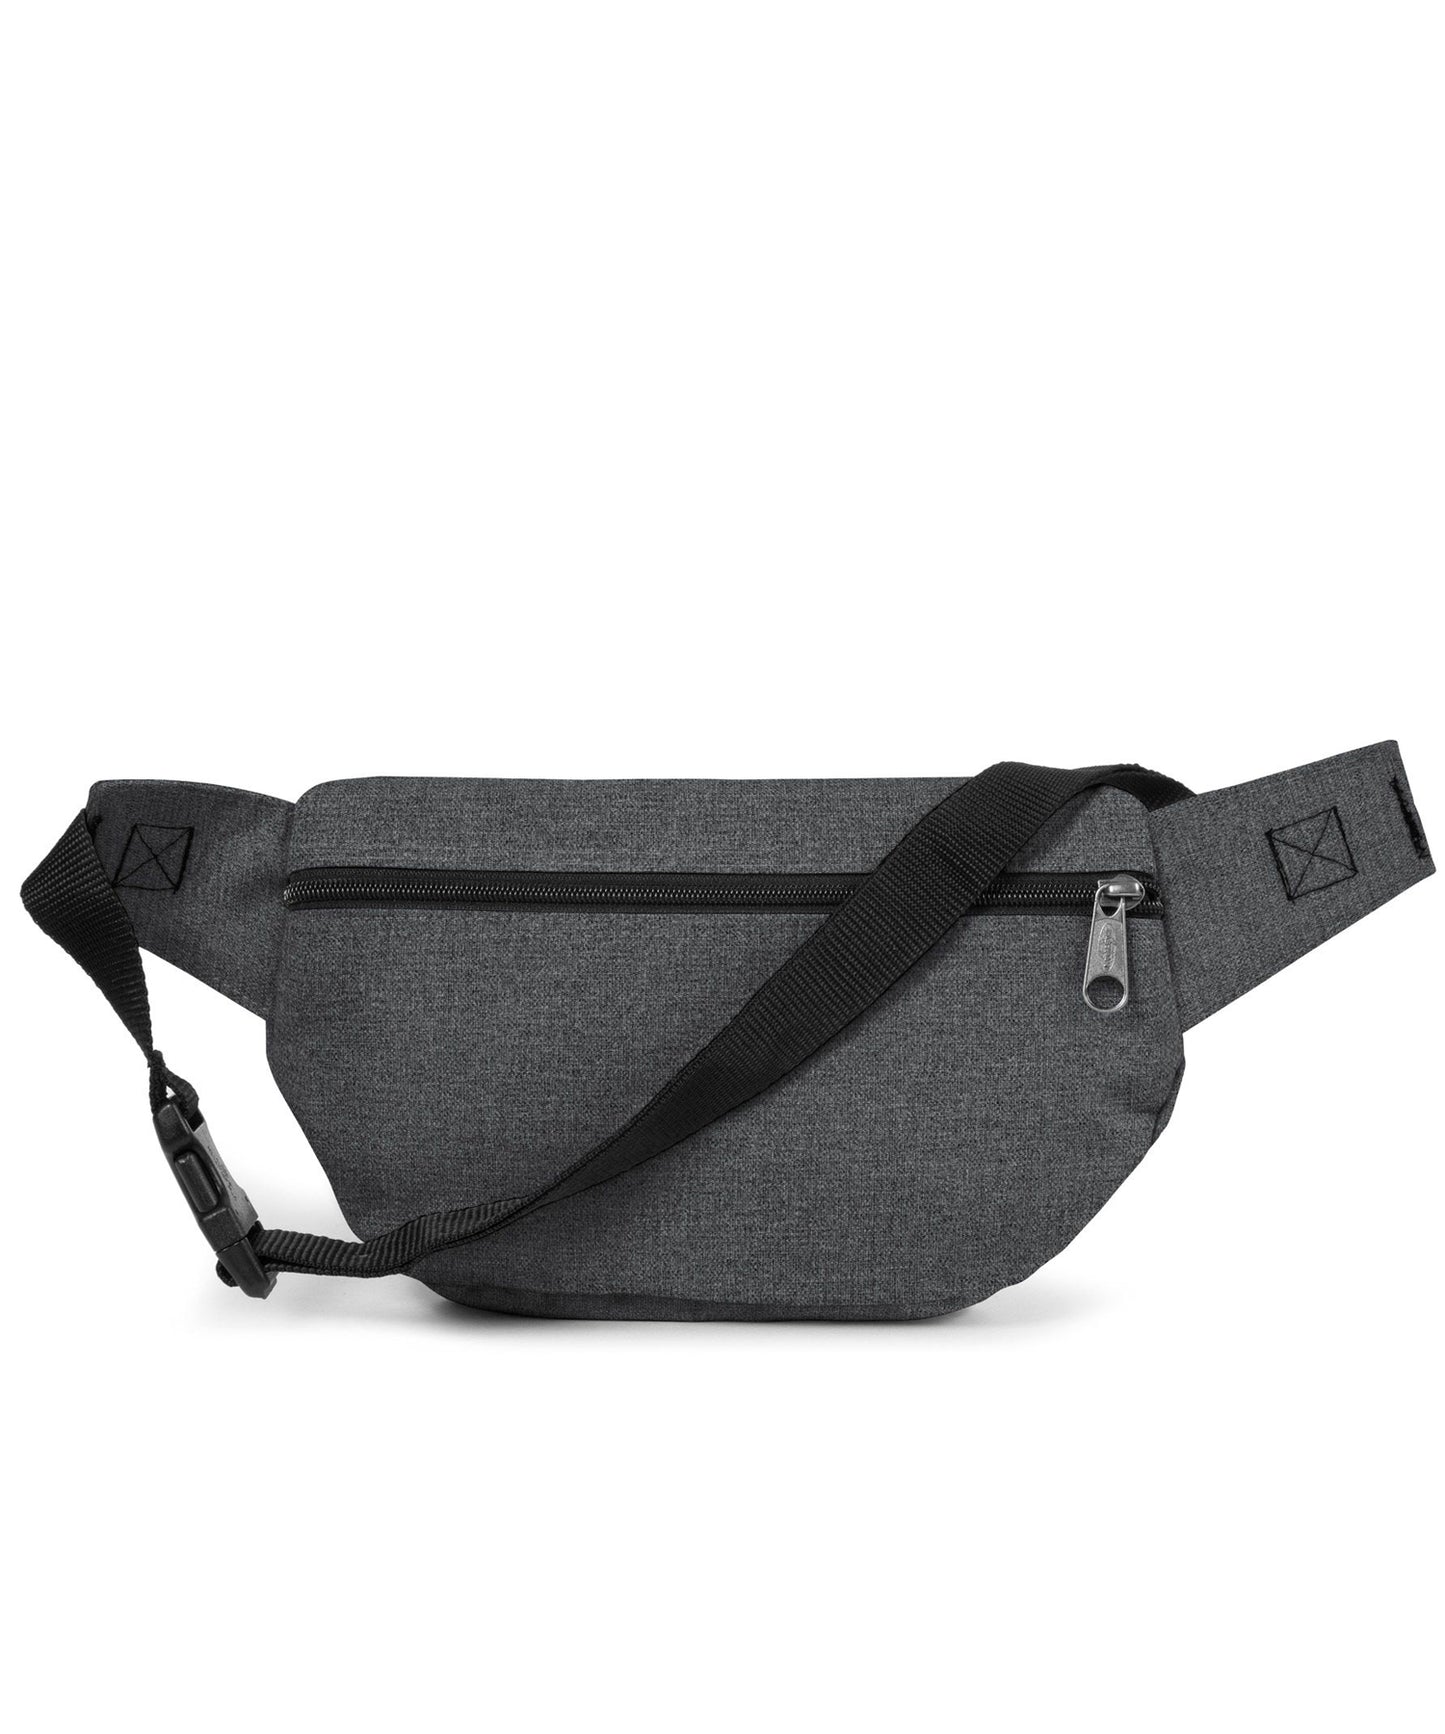 eastpak-doggy bag riñonera amplia de color gris oscuro-dos bolsillos delanteros y uno trasero-calidad y durabilidad eastpak